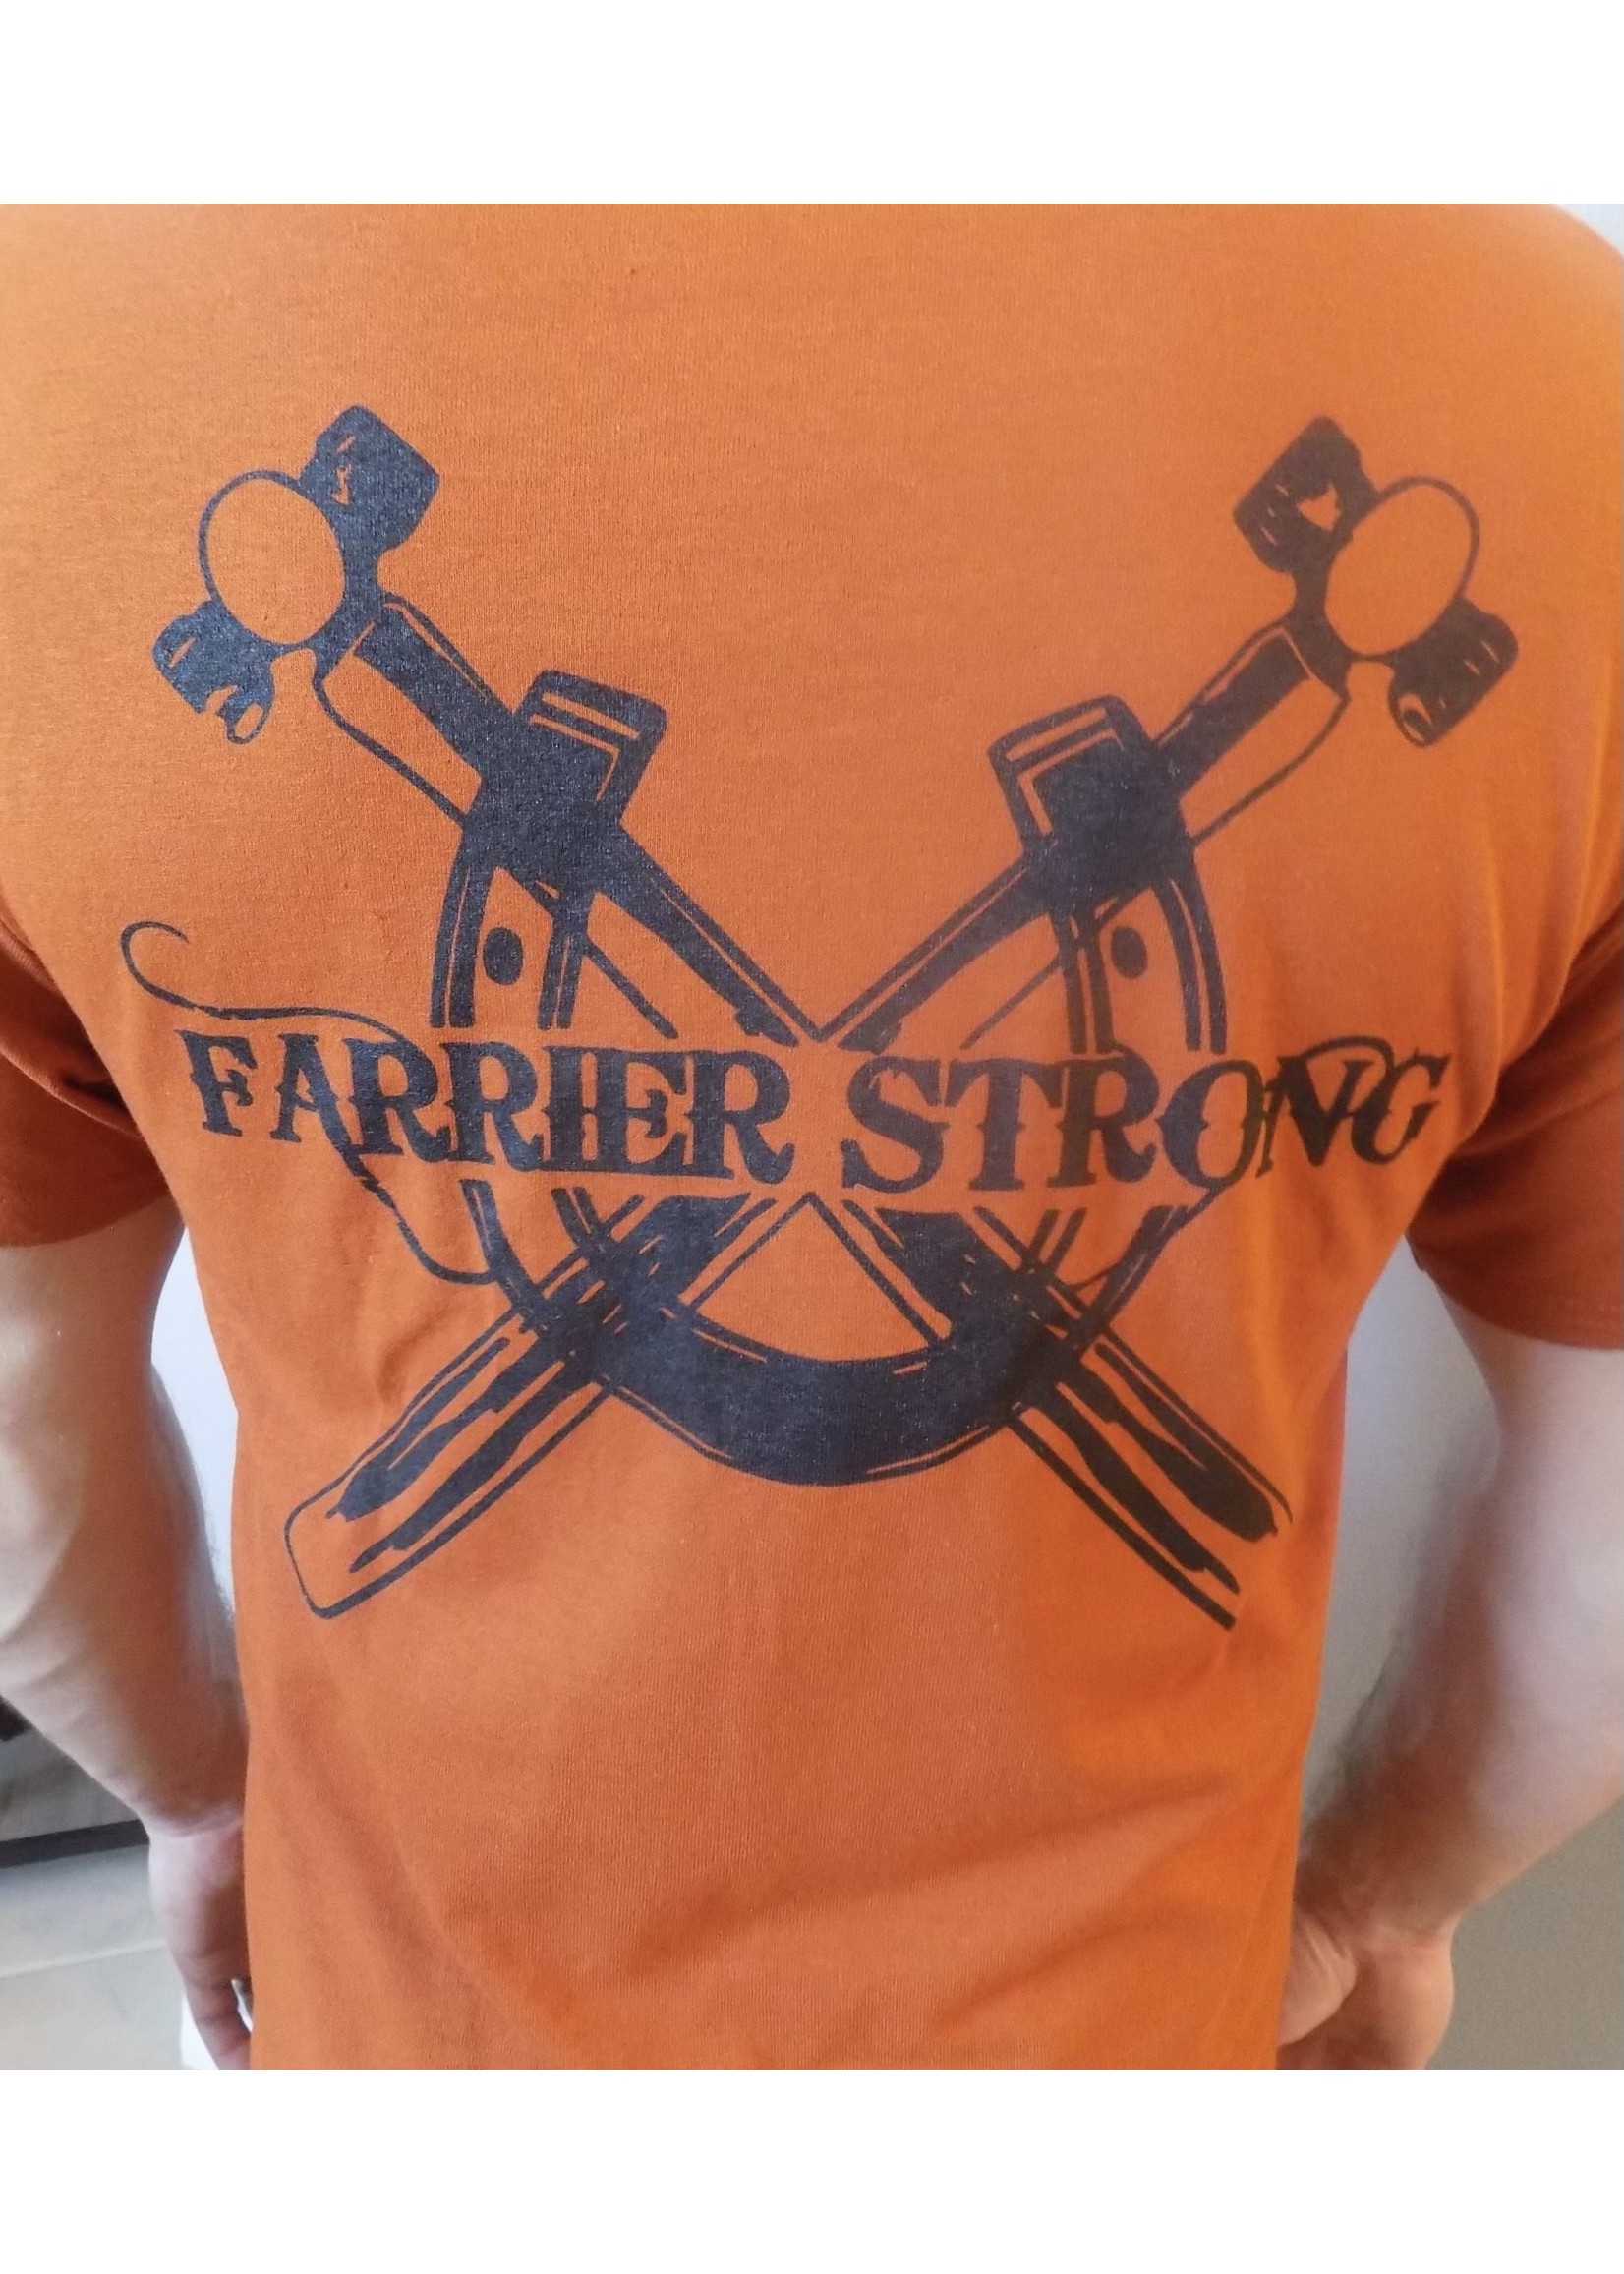 Farrier Strong Farrier Strong Tee Shirt